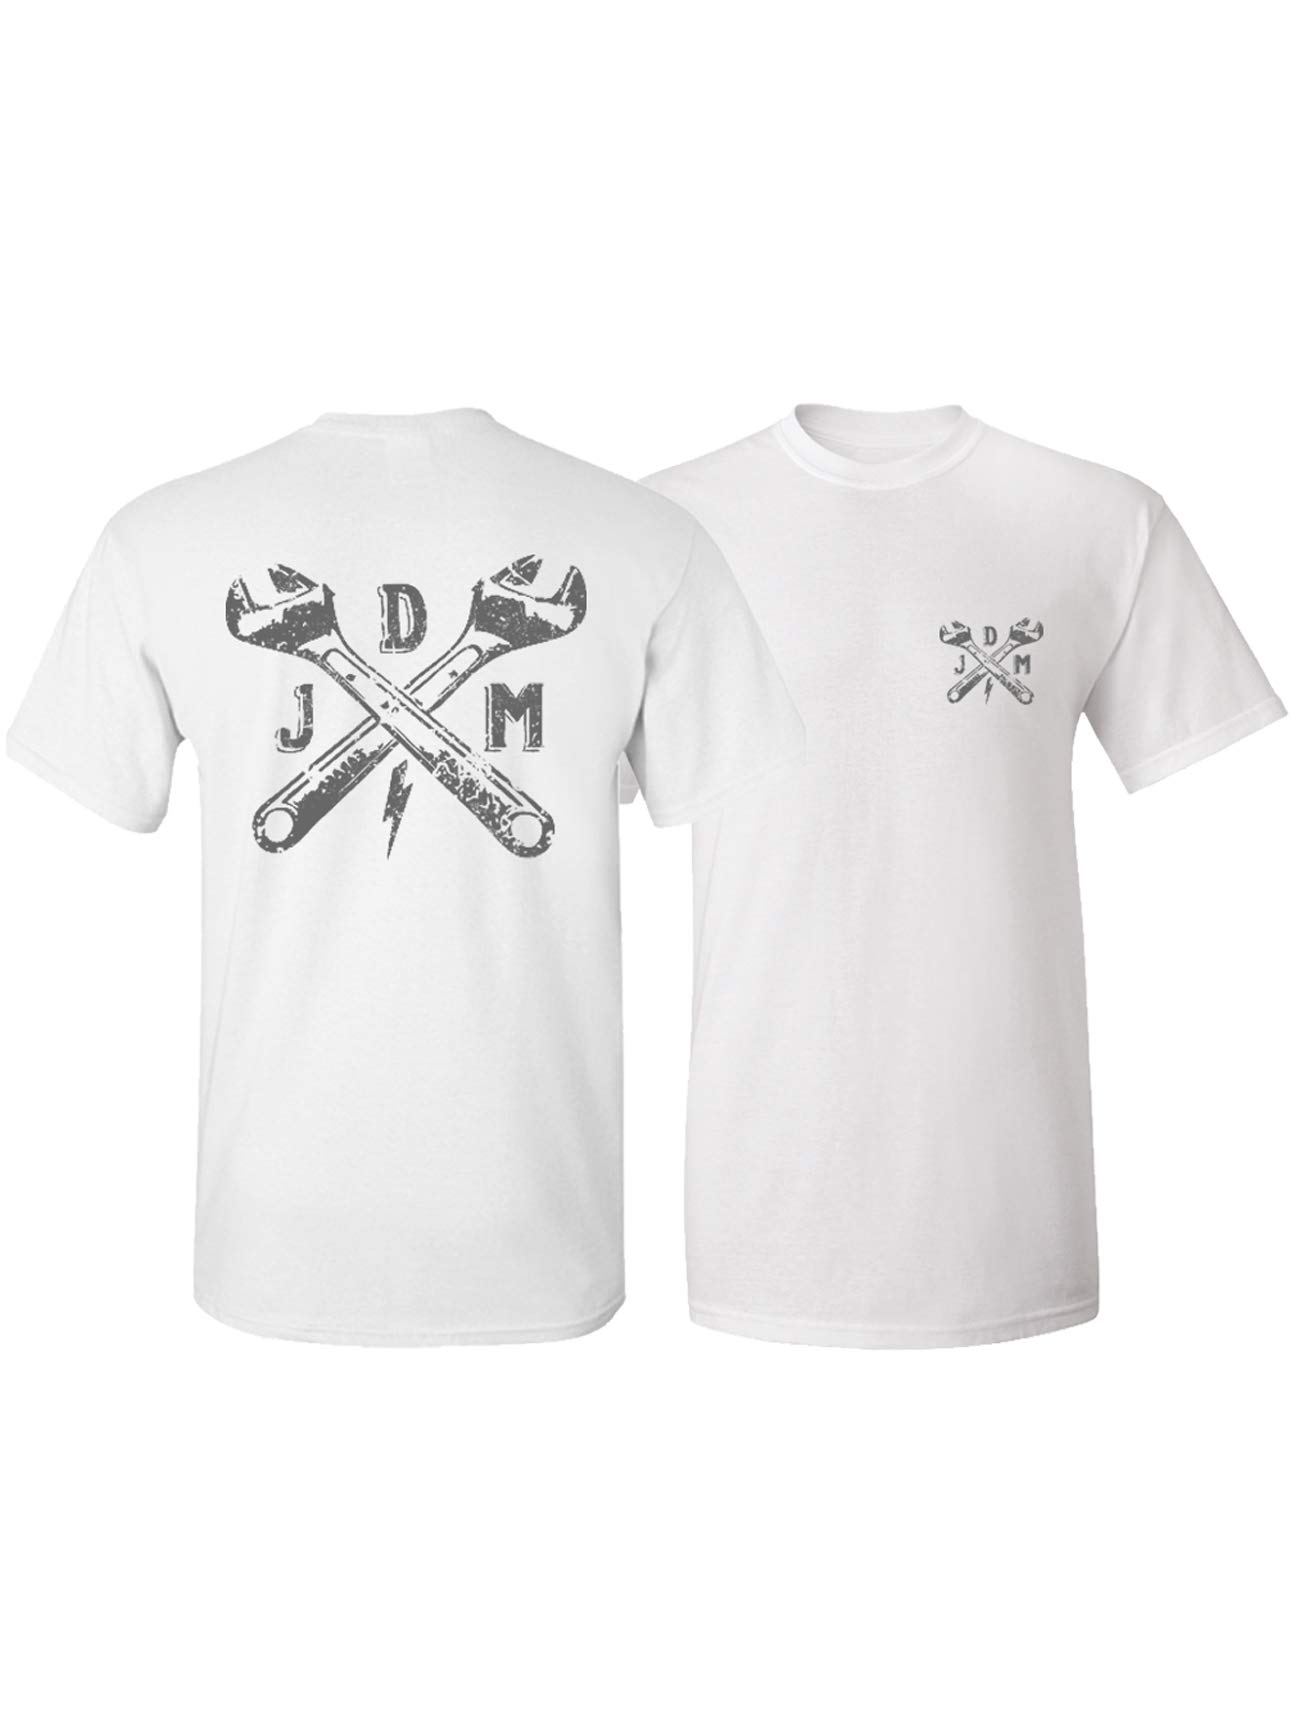 John Doe T-Shirt Men | T-Shirt für Sport oder Freizeit | Kurzarm | Rundhals | Comfort Fit, classic white, l, JDS6015-L von John Doe